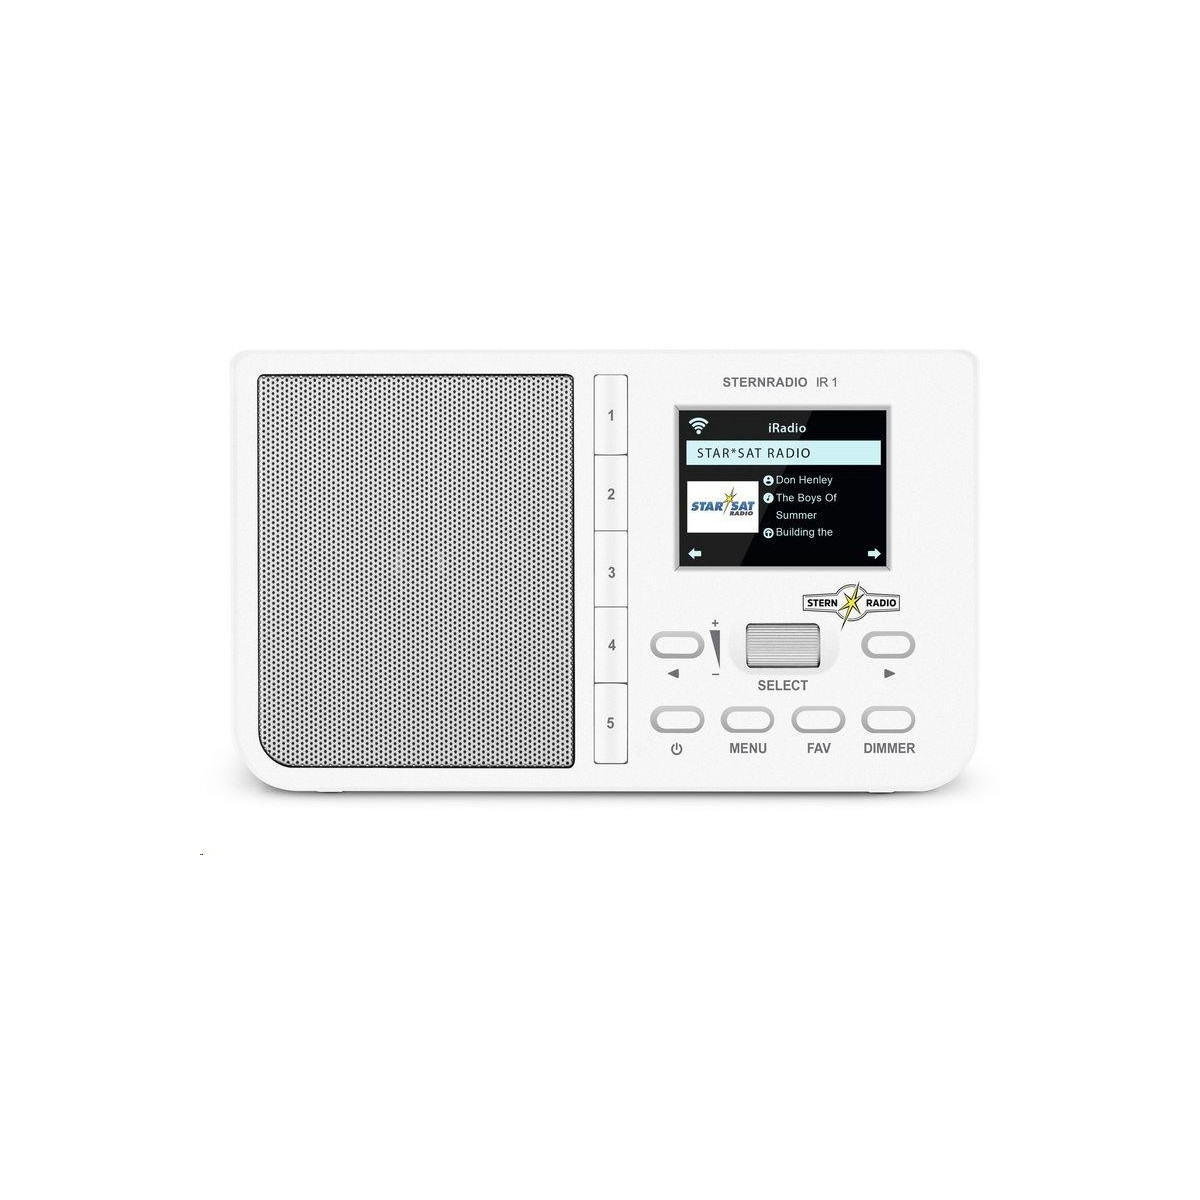 Viac oTechniSat STERNRADIO IR bílé - Kvalitné rádio pre každého - Najlepšia ponuka na trhu